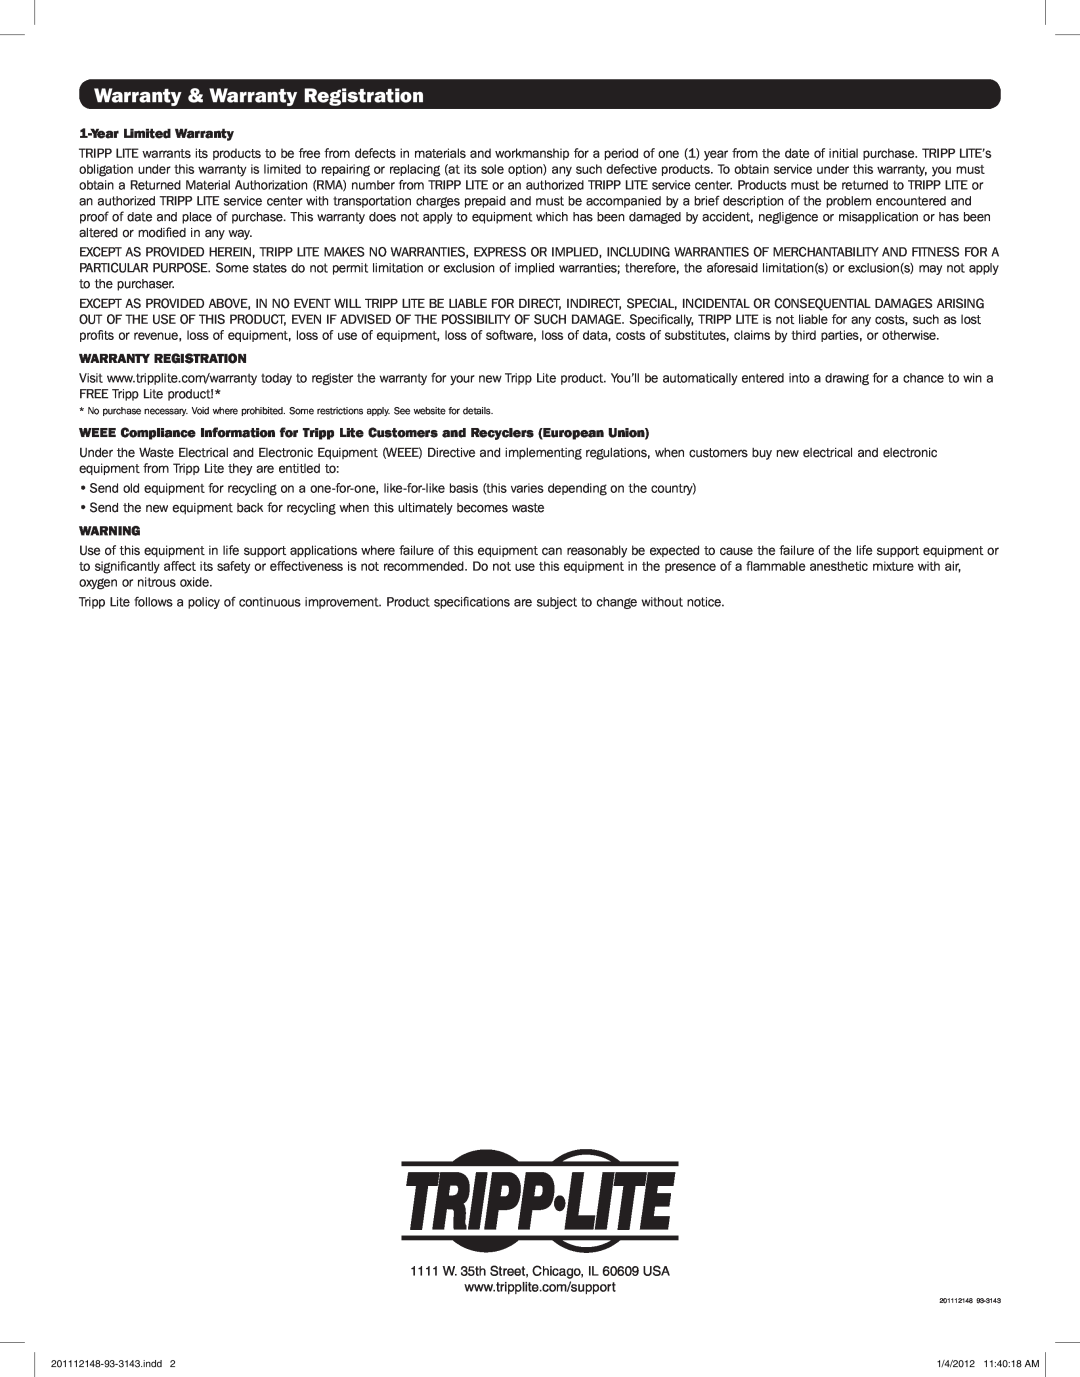 Tripp Lite B122-000 warranty Warranty & Warranty Registration, Year Limited Warranty 